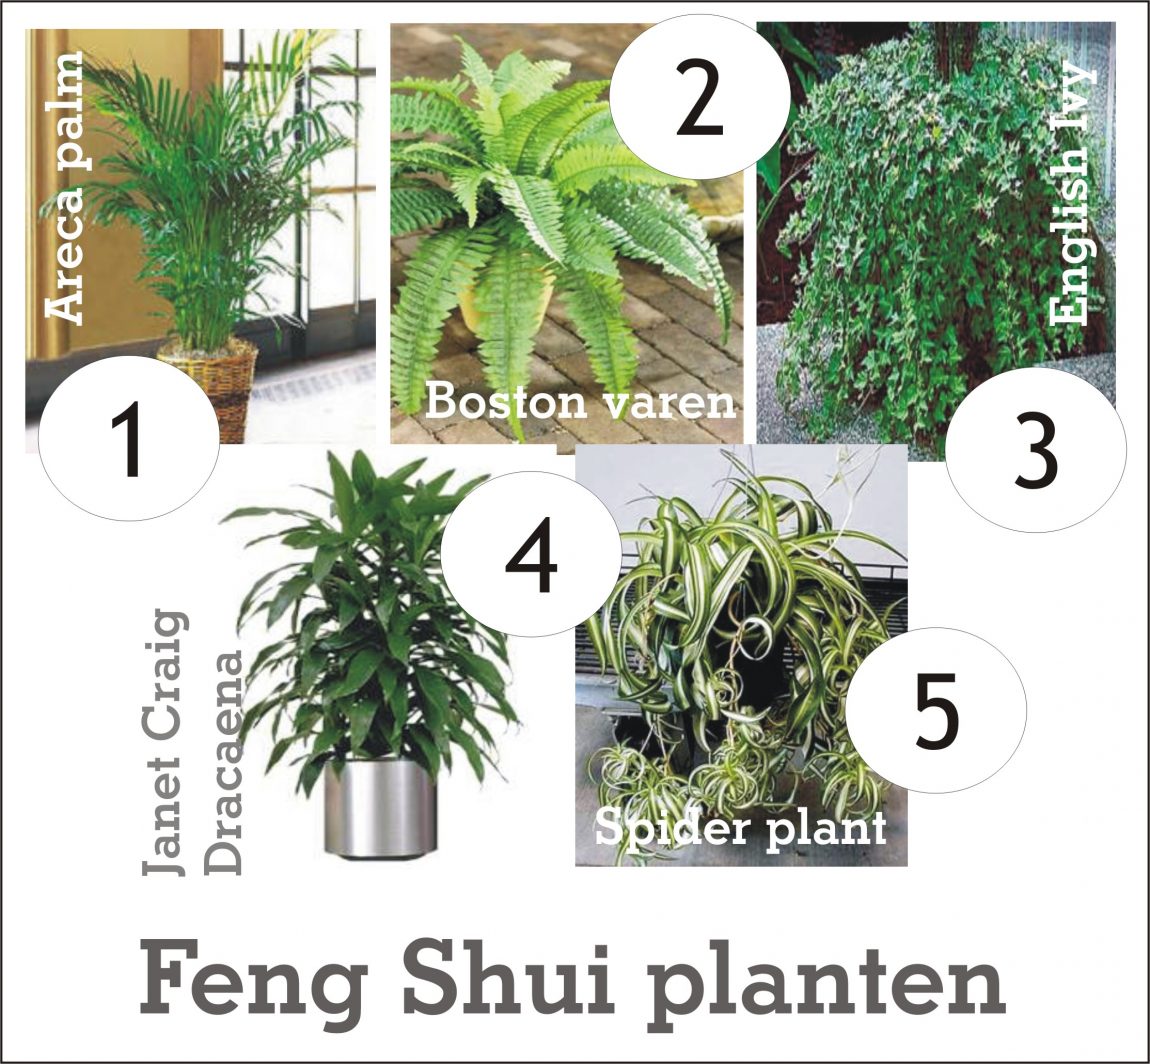 Feng Shui planten.